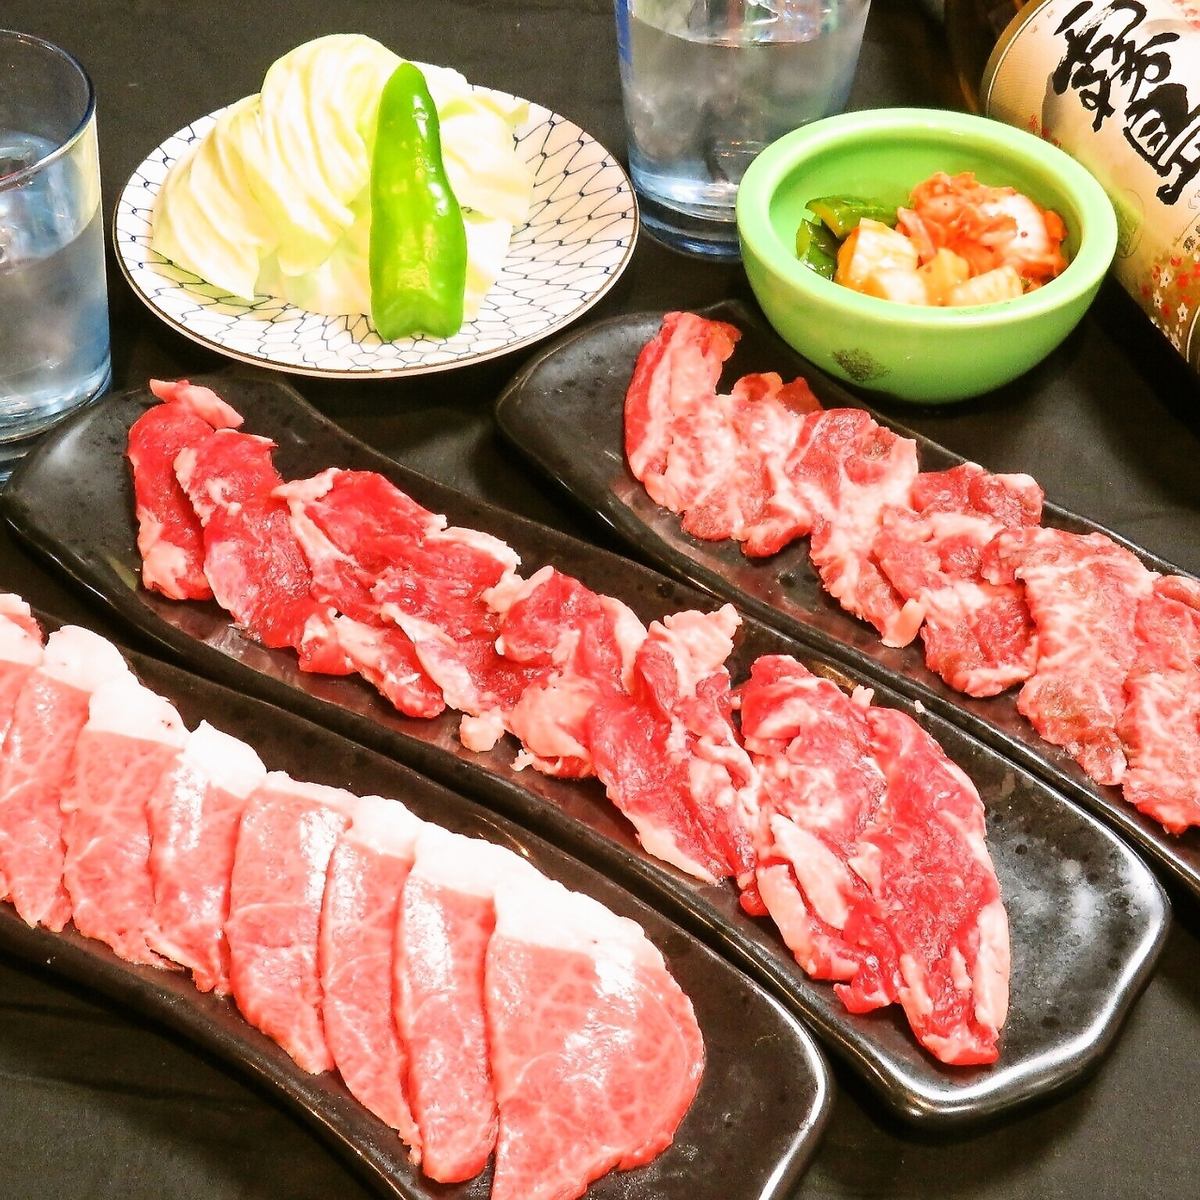 日式酒吧以[新鲜，手工制作和快速食用]为座右铭，侧重于荷尔蒙，烤肉和生鱼片。